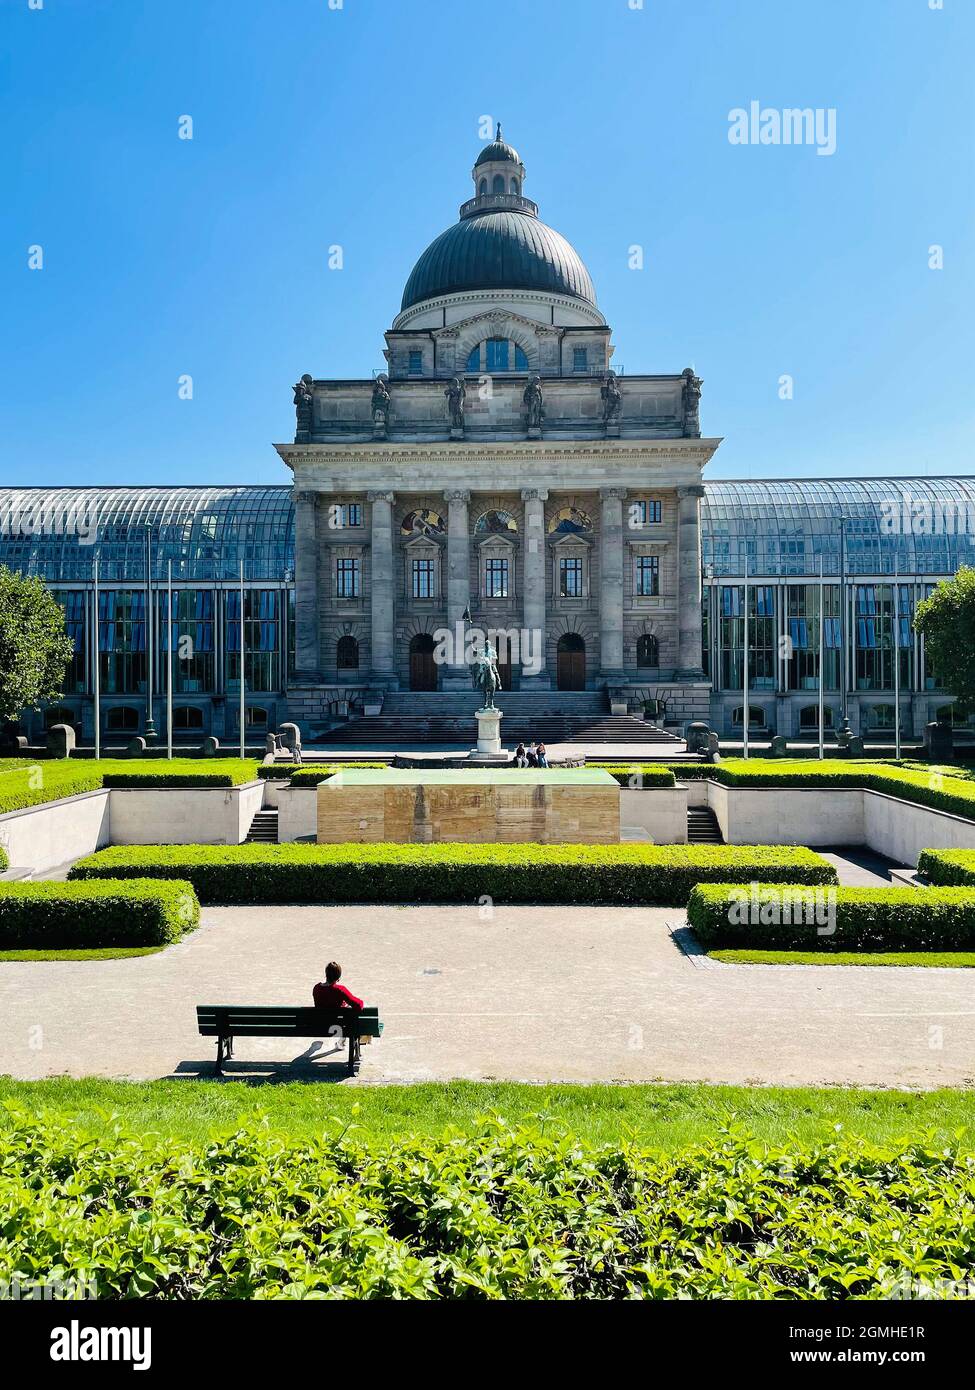 Cancillería del Estado bávaro en Munich con sede oficial del Primer Ministro del Estado Libre de Baviera - Alemania. Foto de stock